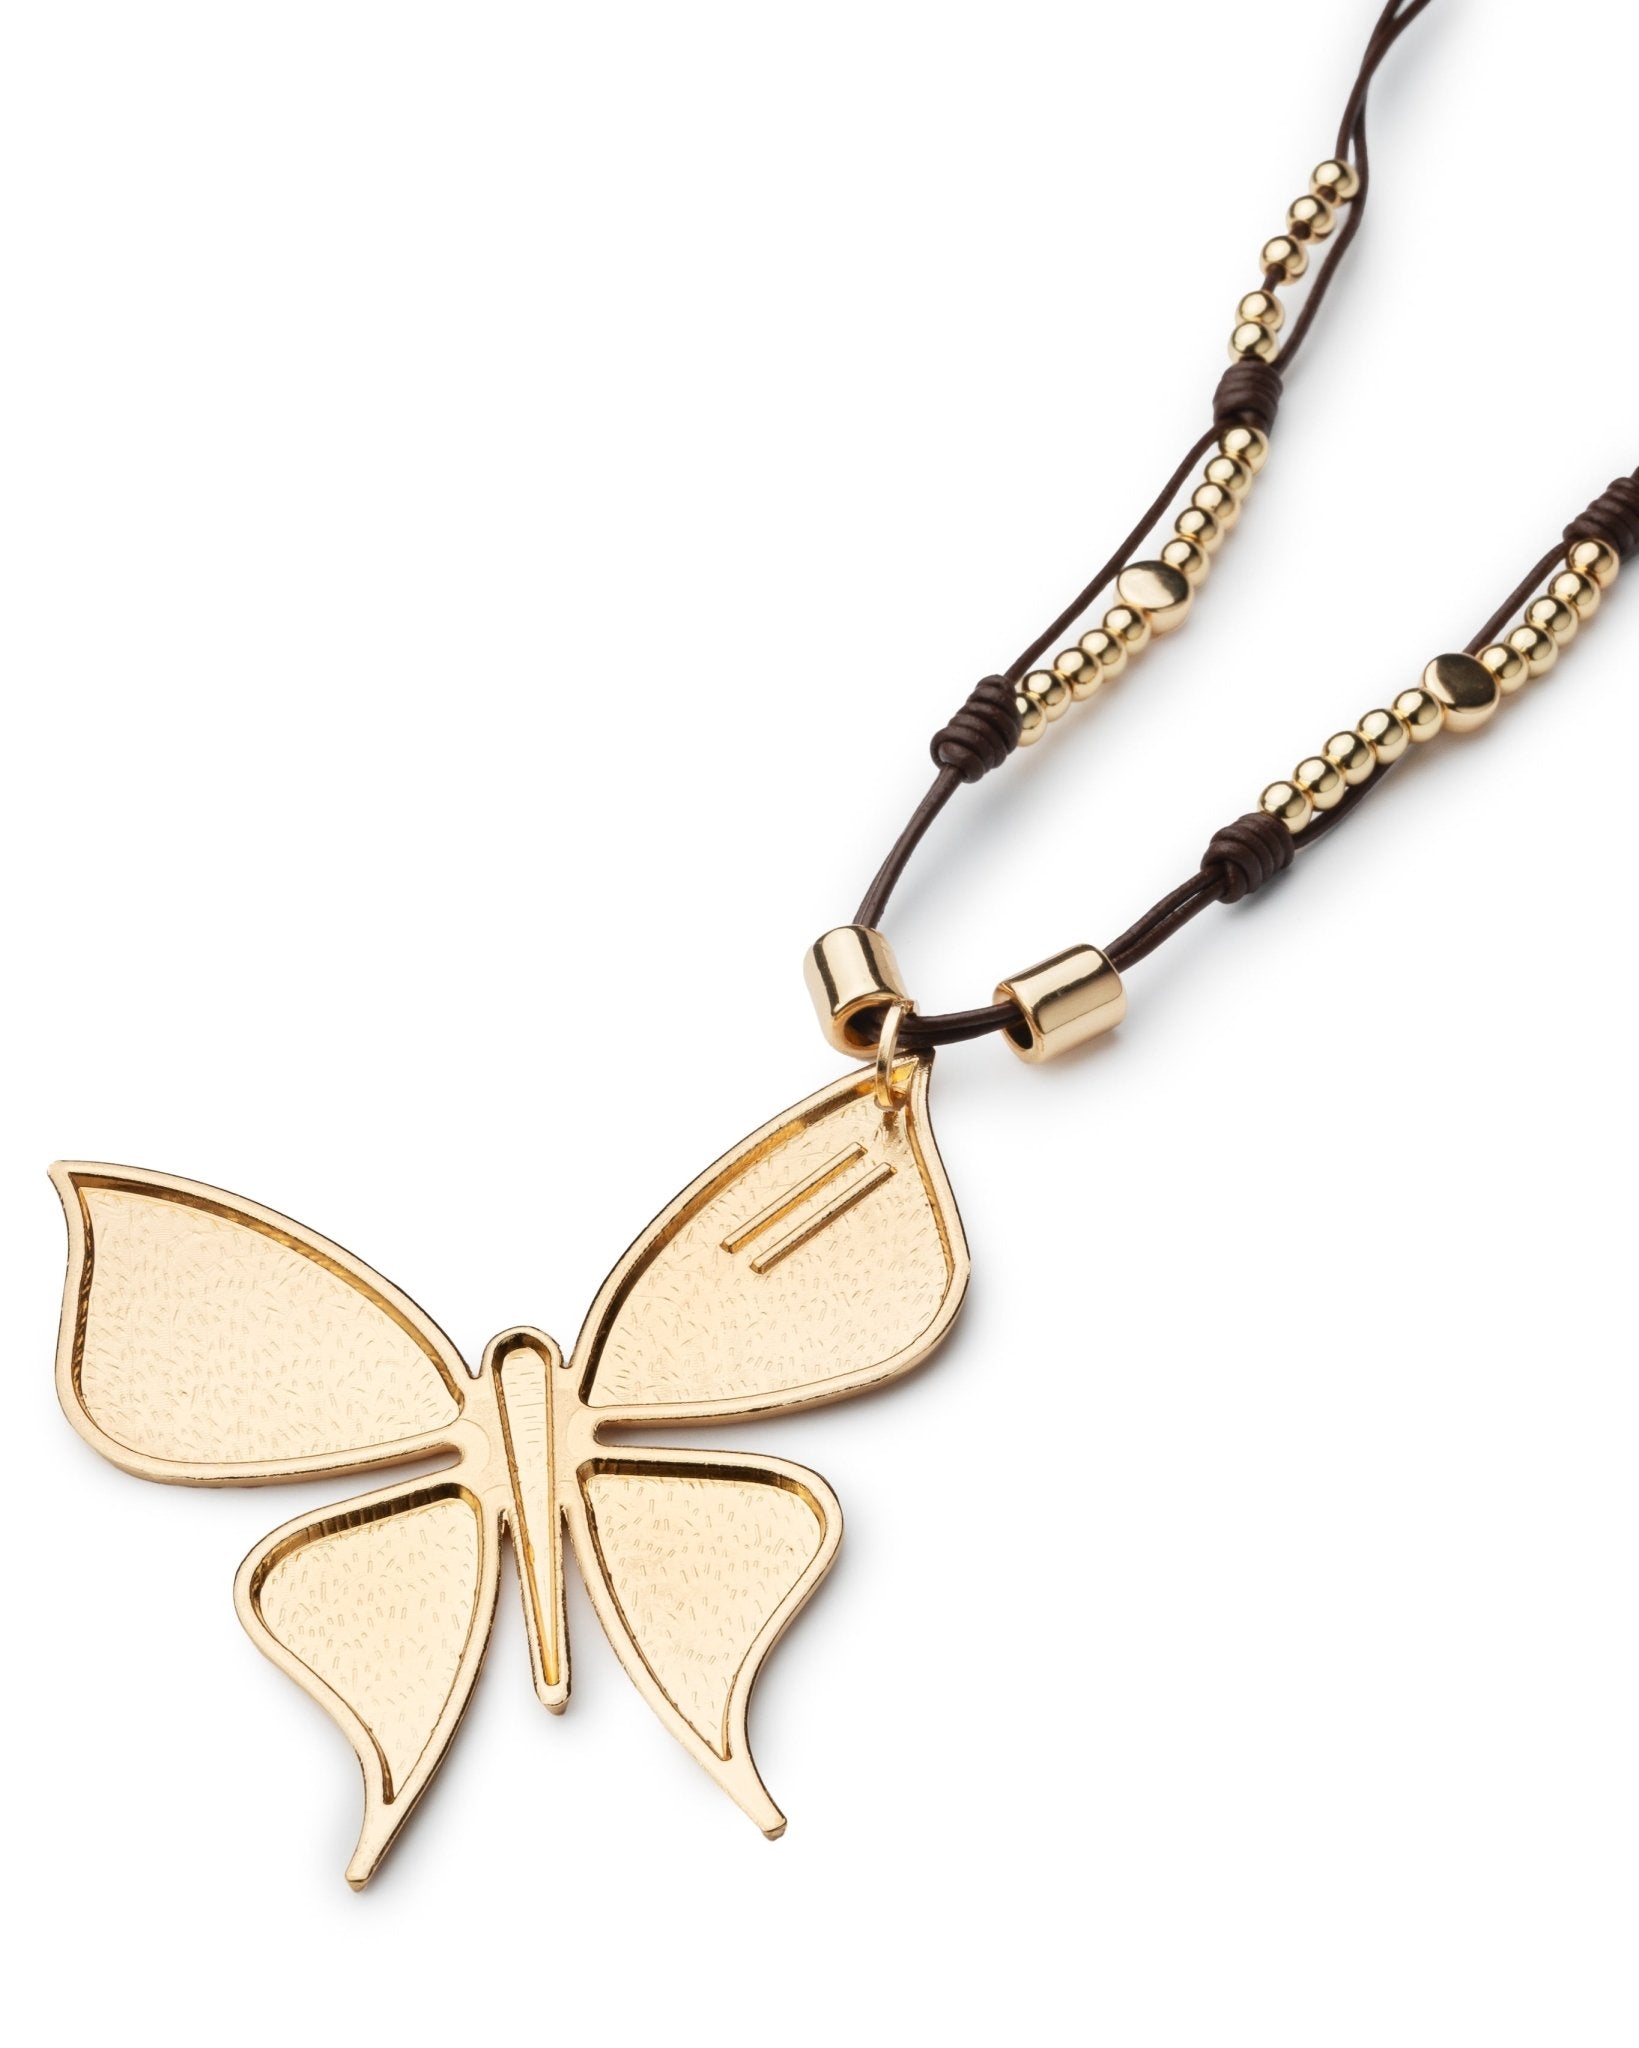 Collana lunga con laccio in cuoio con pendente a farfalla - Mya Accessories